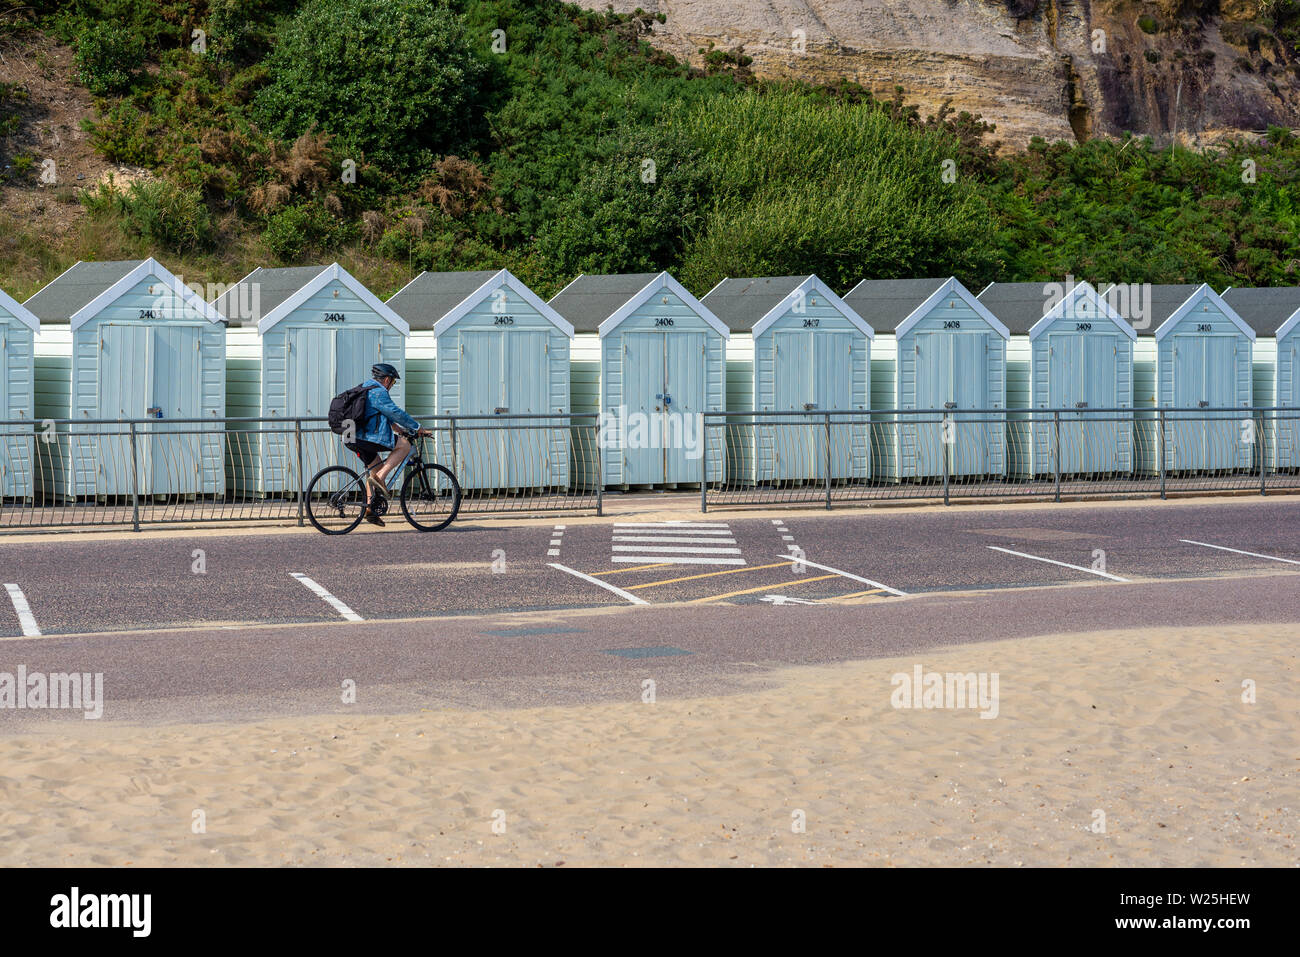 Passage cycliste sky blue beach huts in sur la promenade à Bournemouth, Dorset, UK Banque D'Images